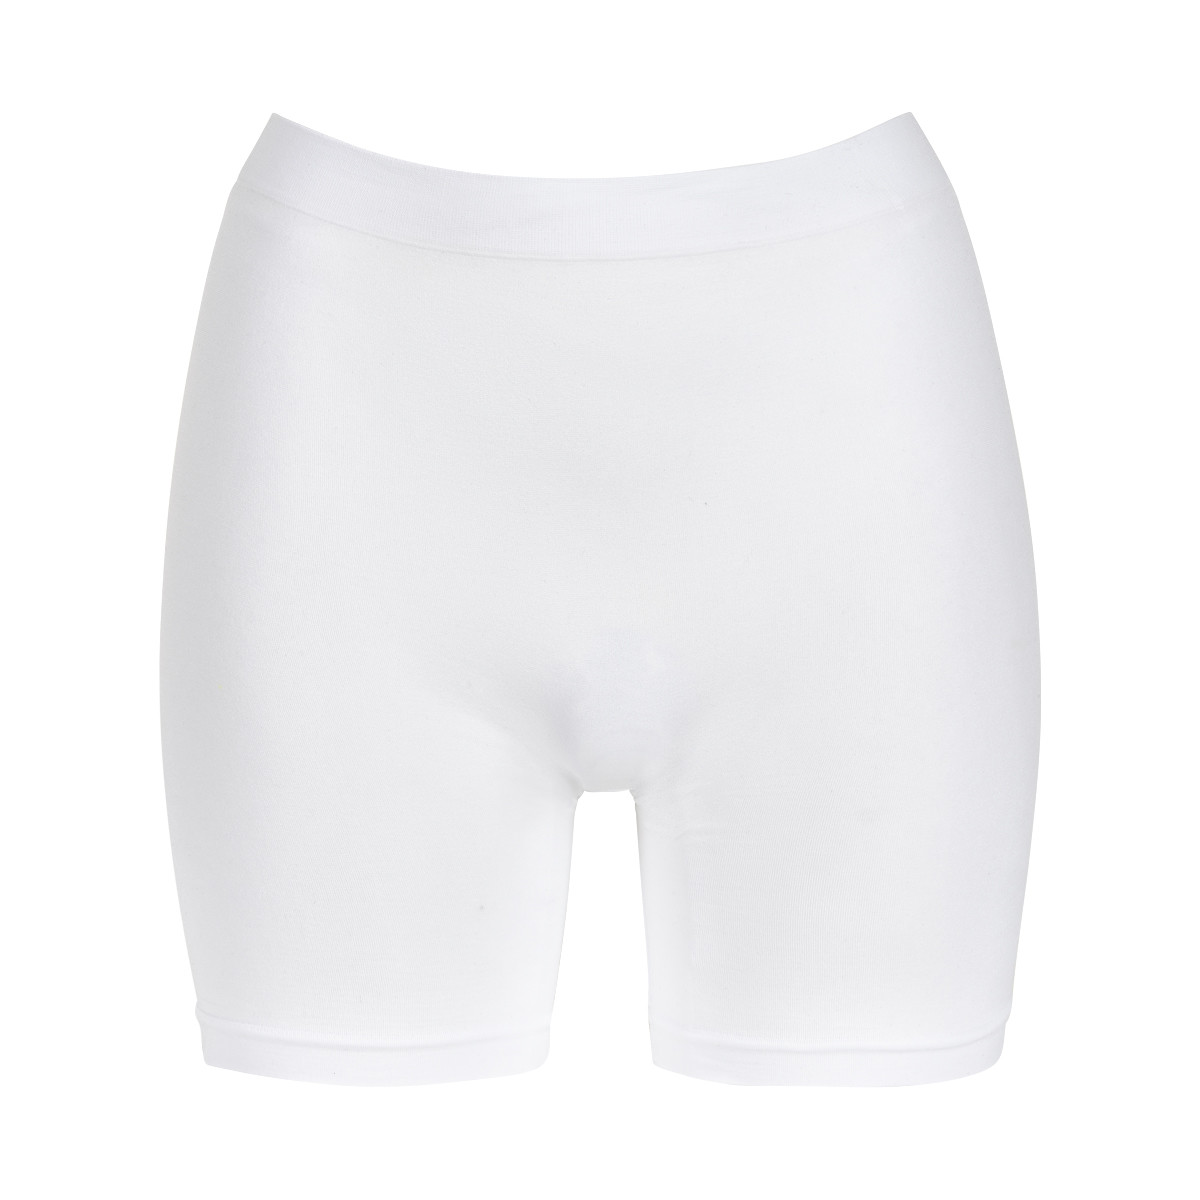 #2 - Missya Lucia Shorts, Farve: Hvid, Størrelse: S, Dame